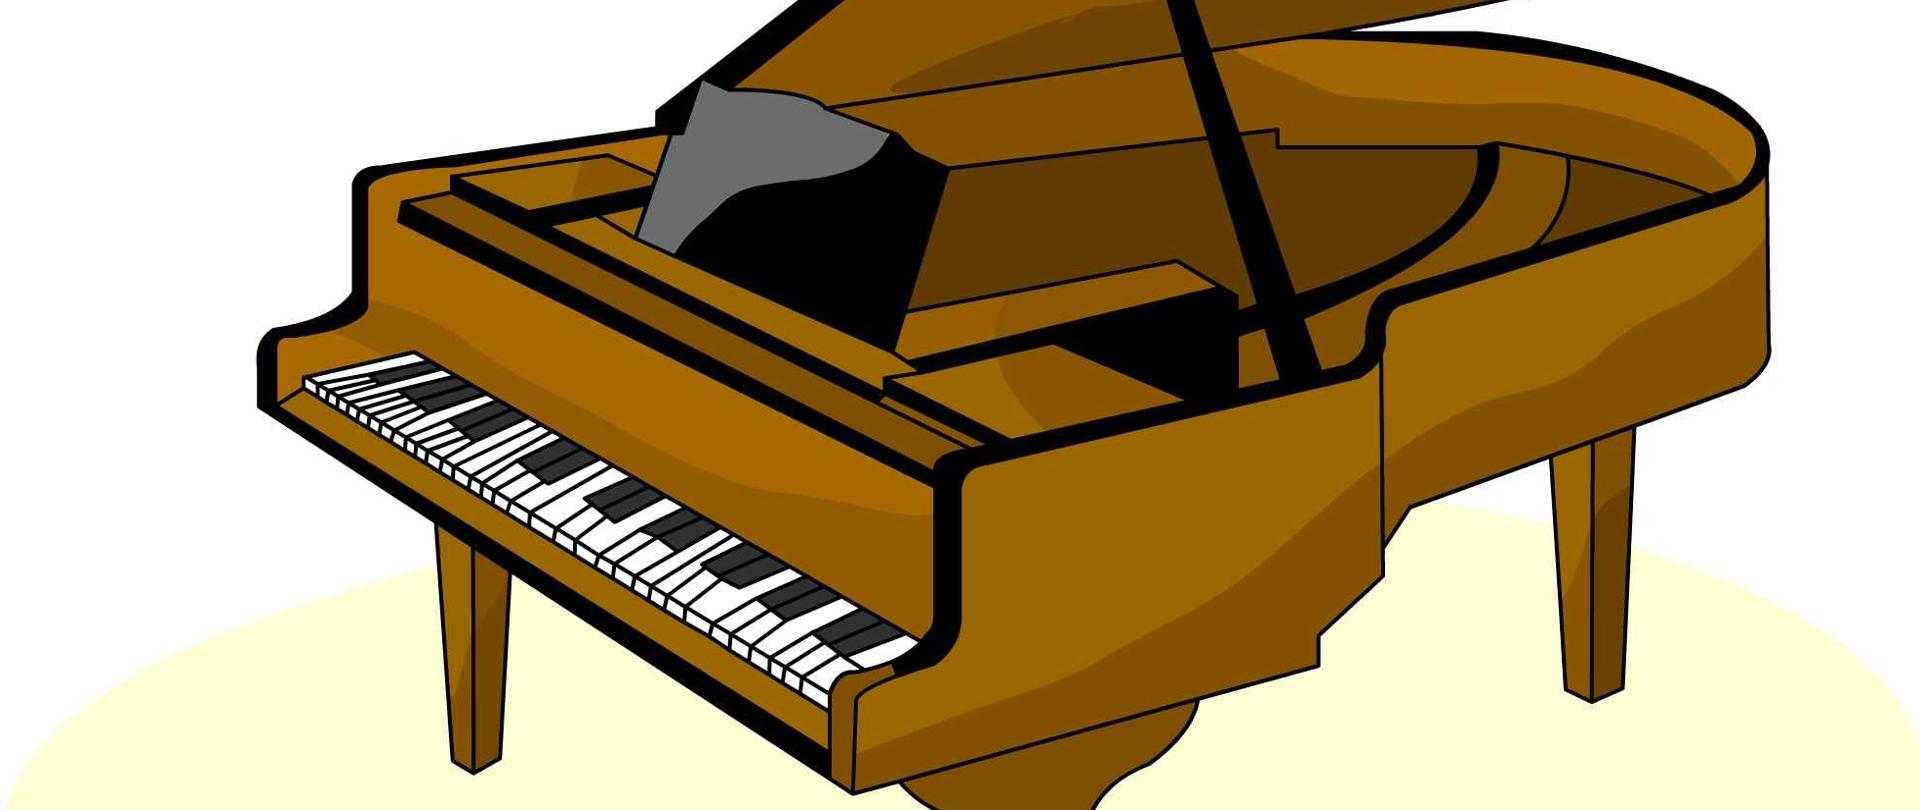 Na środku zdjęcia znajduje się brązowy fortepian z otwartą klapą